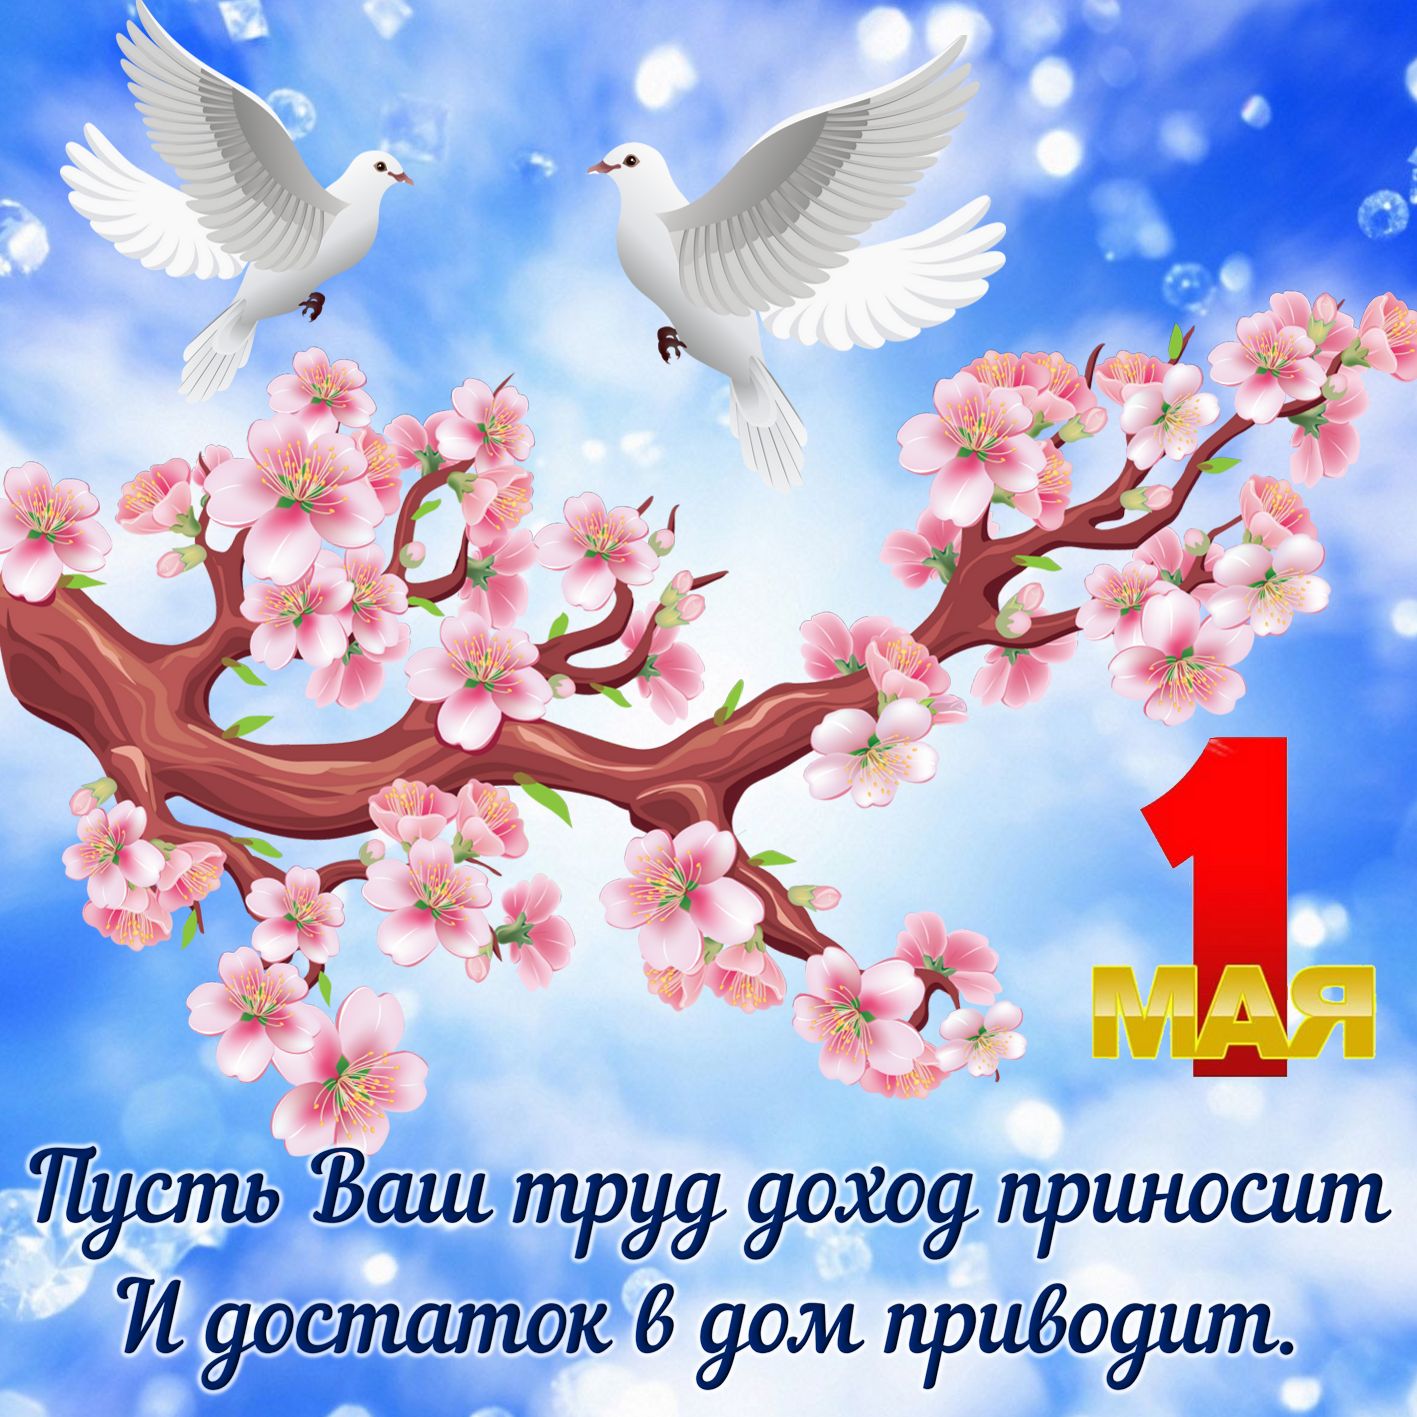 Два голубя над цветущей веткой и пожелание хорошего Первомая.